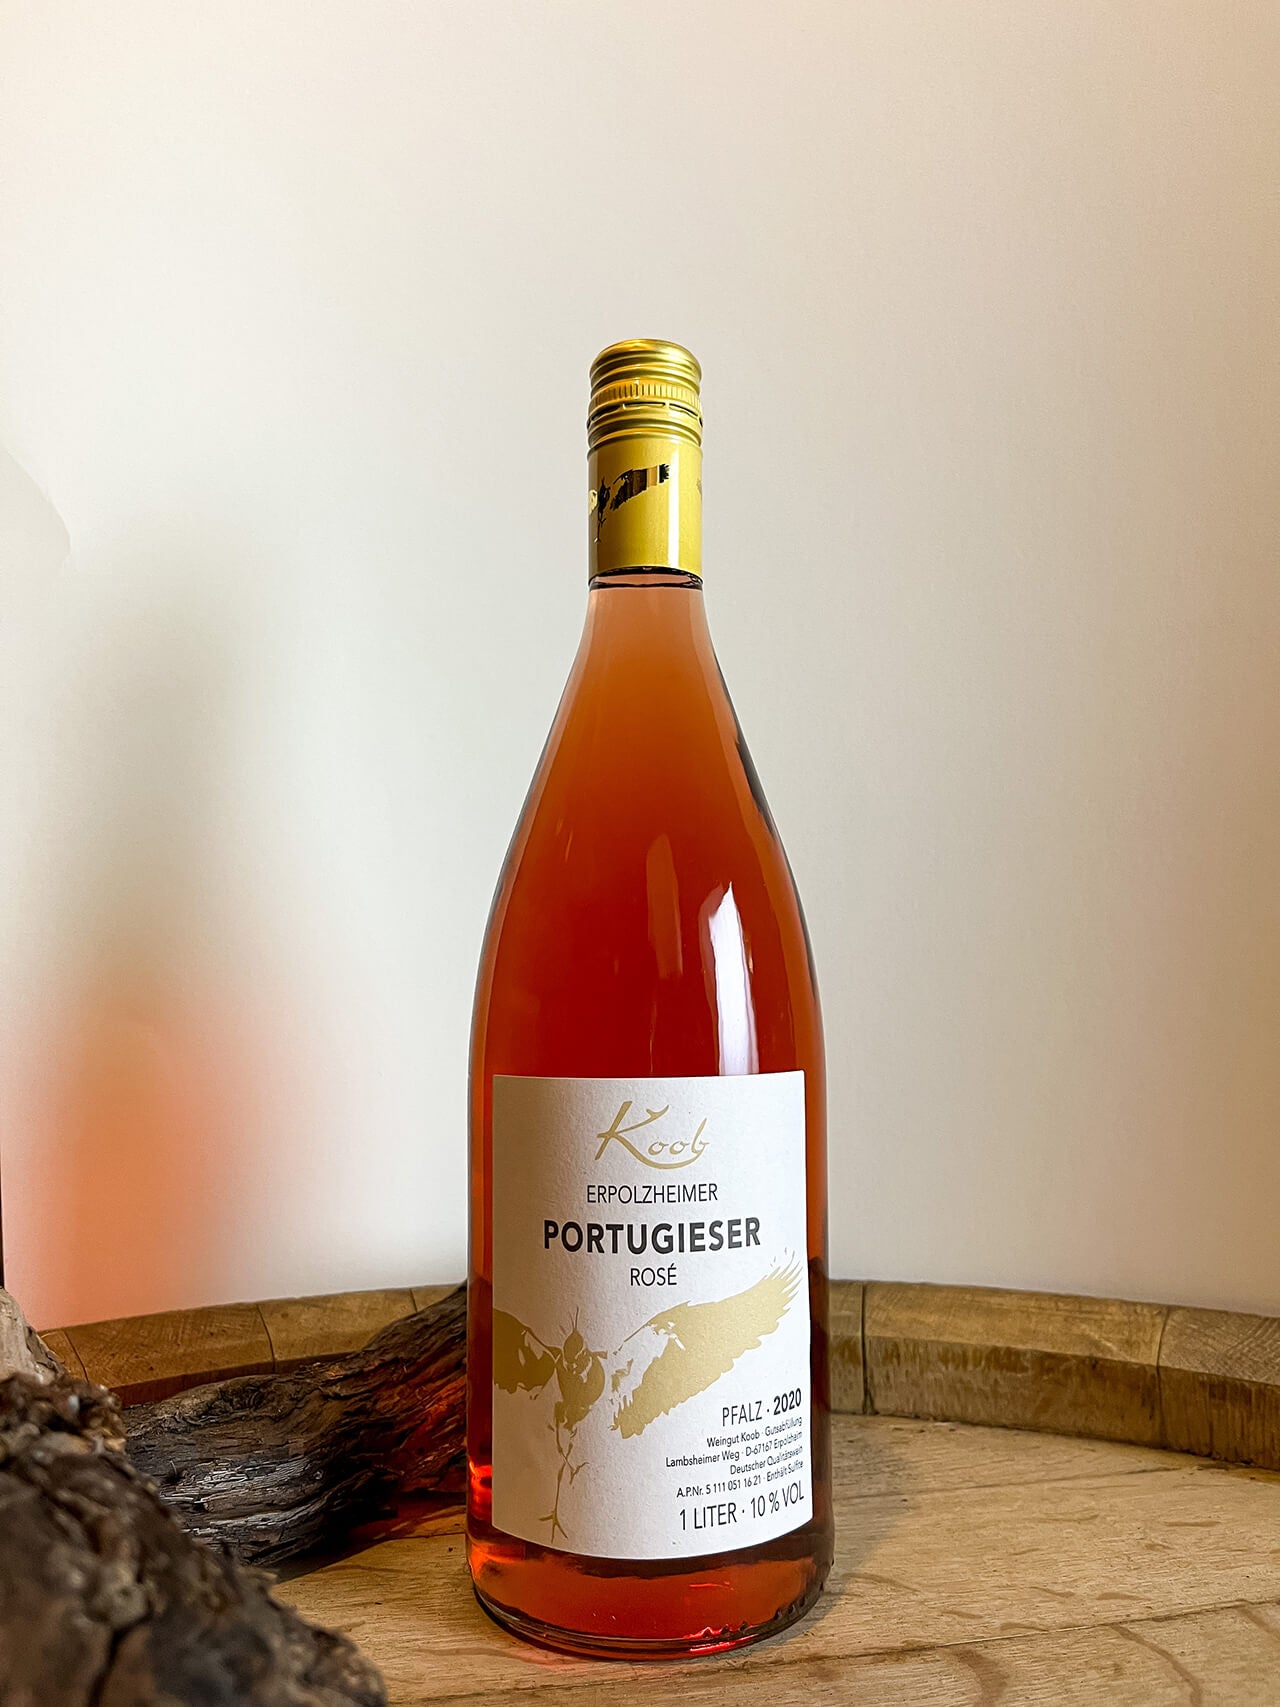 – Koob Erpolzheimer lieblich Weingut Rosé Portugieser